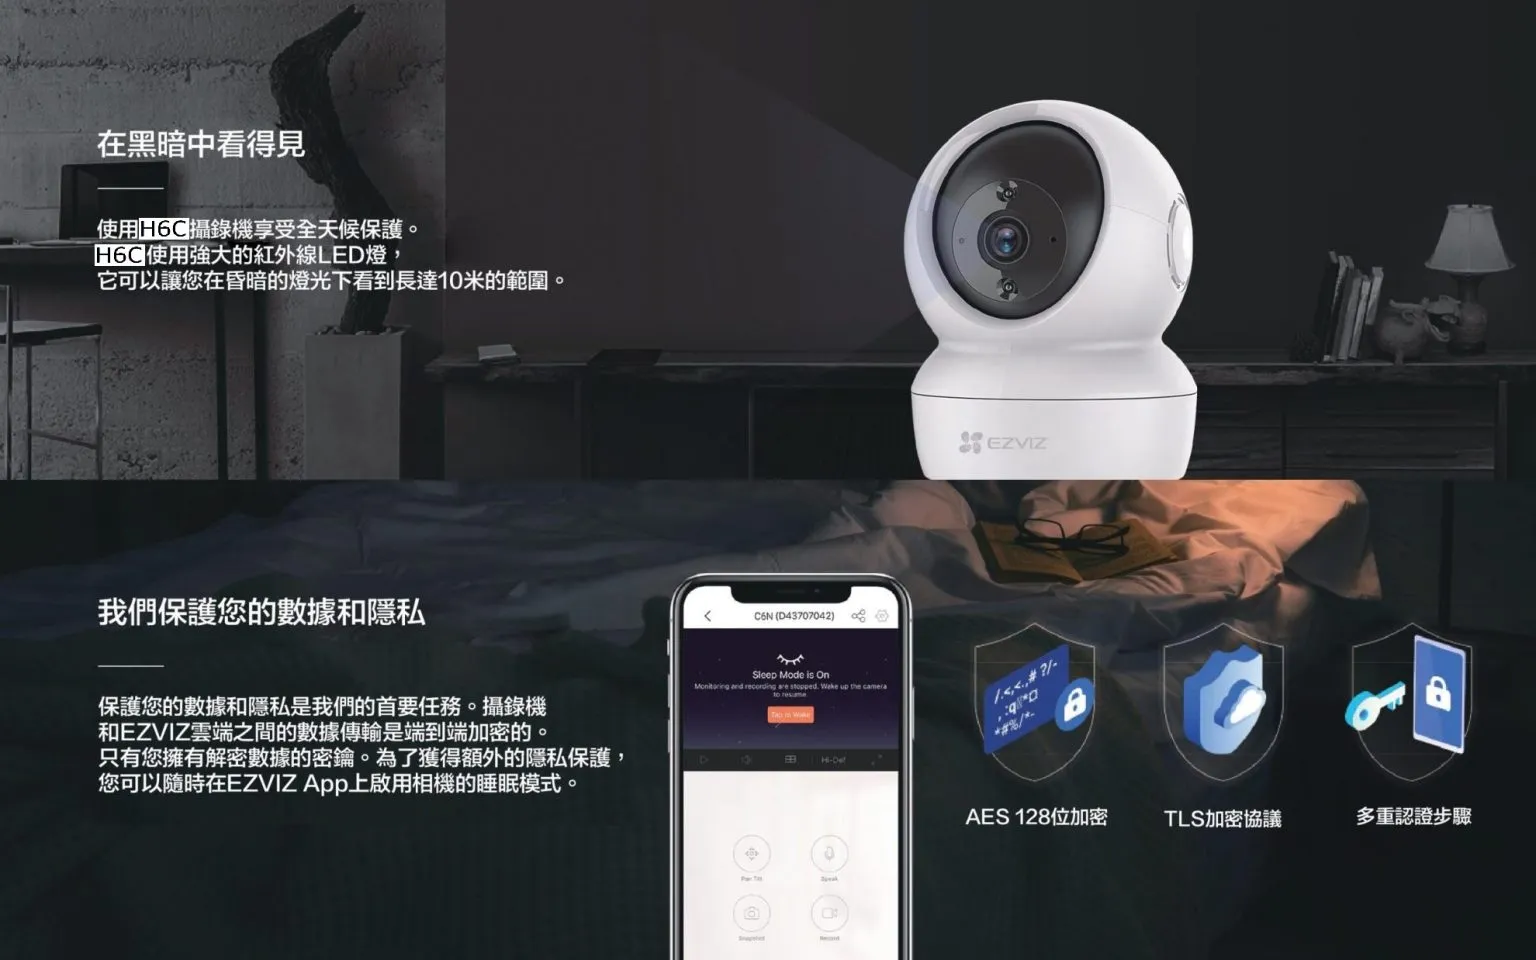 螢石 EZVIZ H6C-4MP 360°雲台版網絡攝錄機 (2K) (香港行貨)